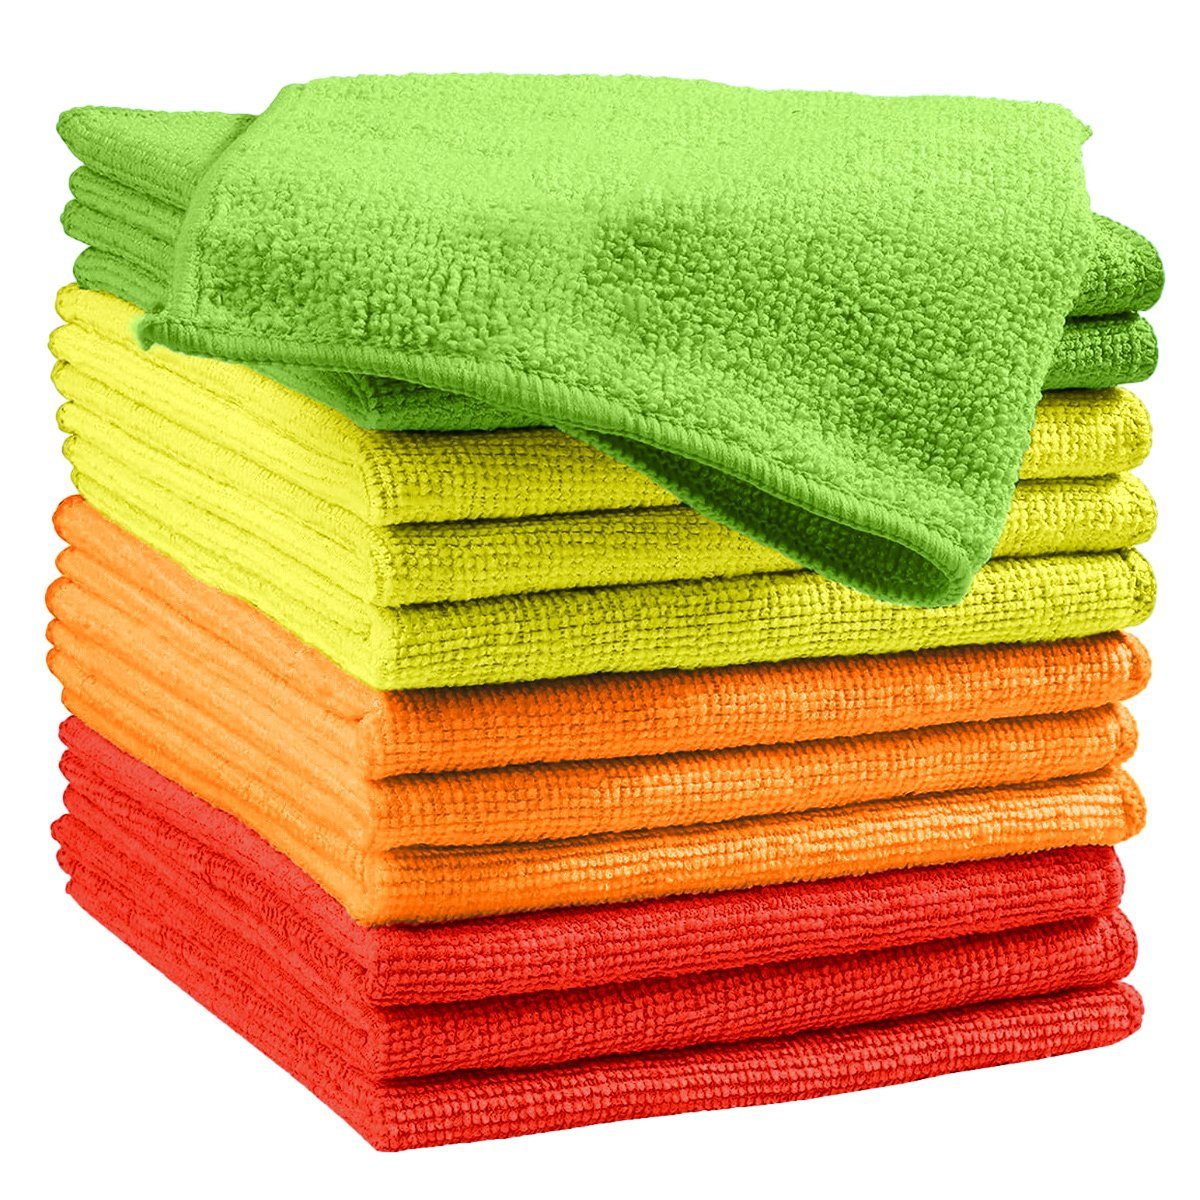 Questive Mikrofaser-Reinigungstuch12 Stück Reinigungstücher, Reinigungstücher Reinigungstücher Rot,Gelb,Grün,Orange | Reinigungstücher